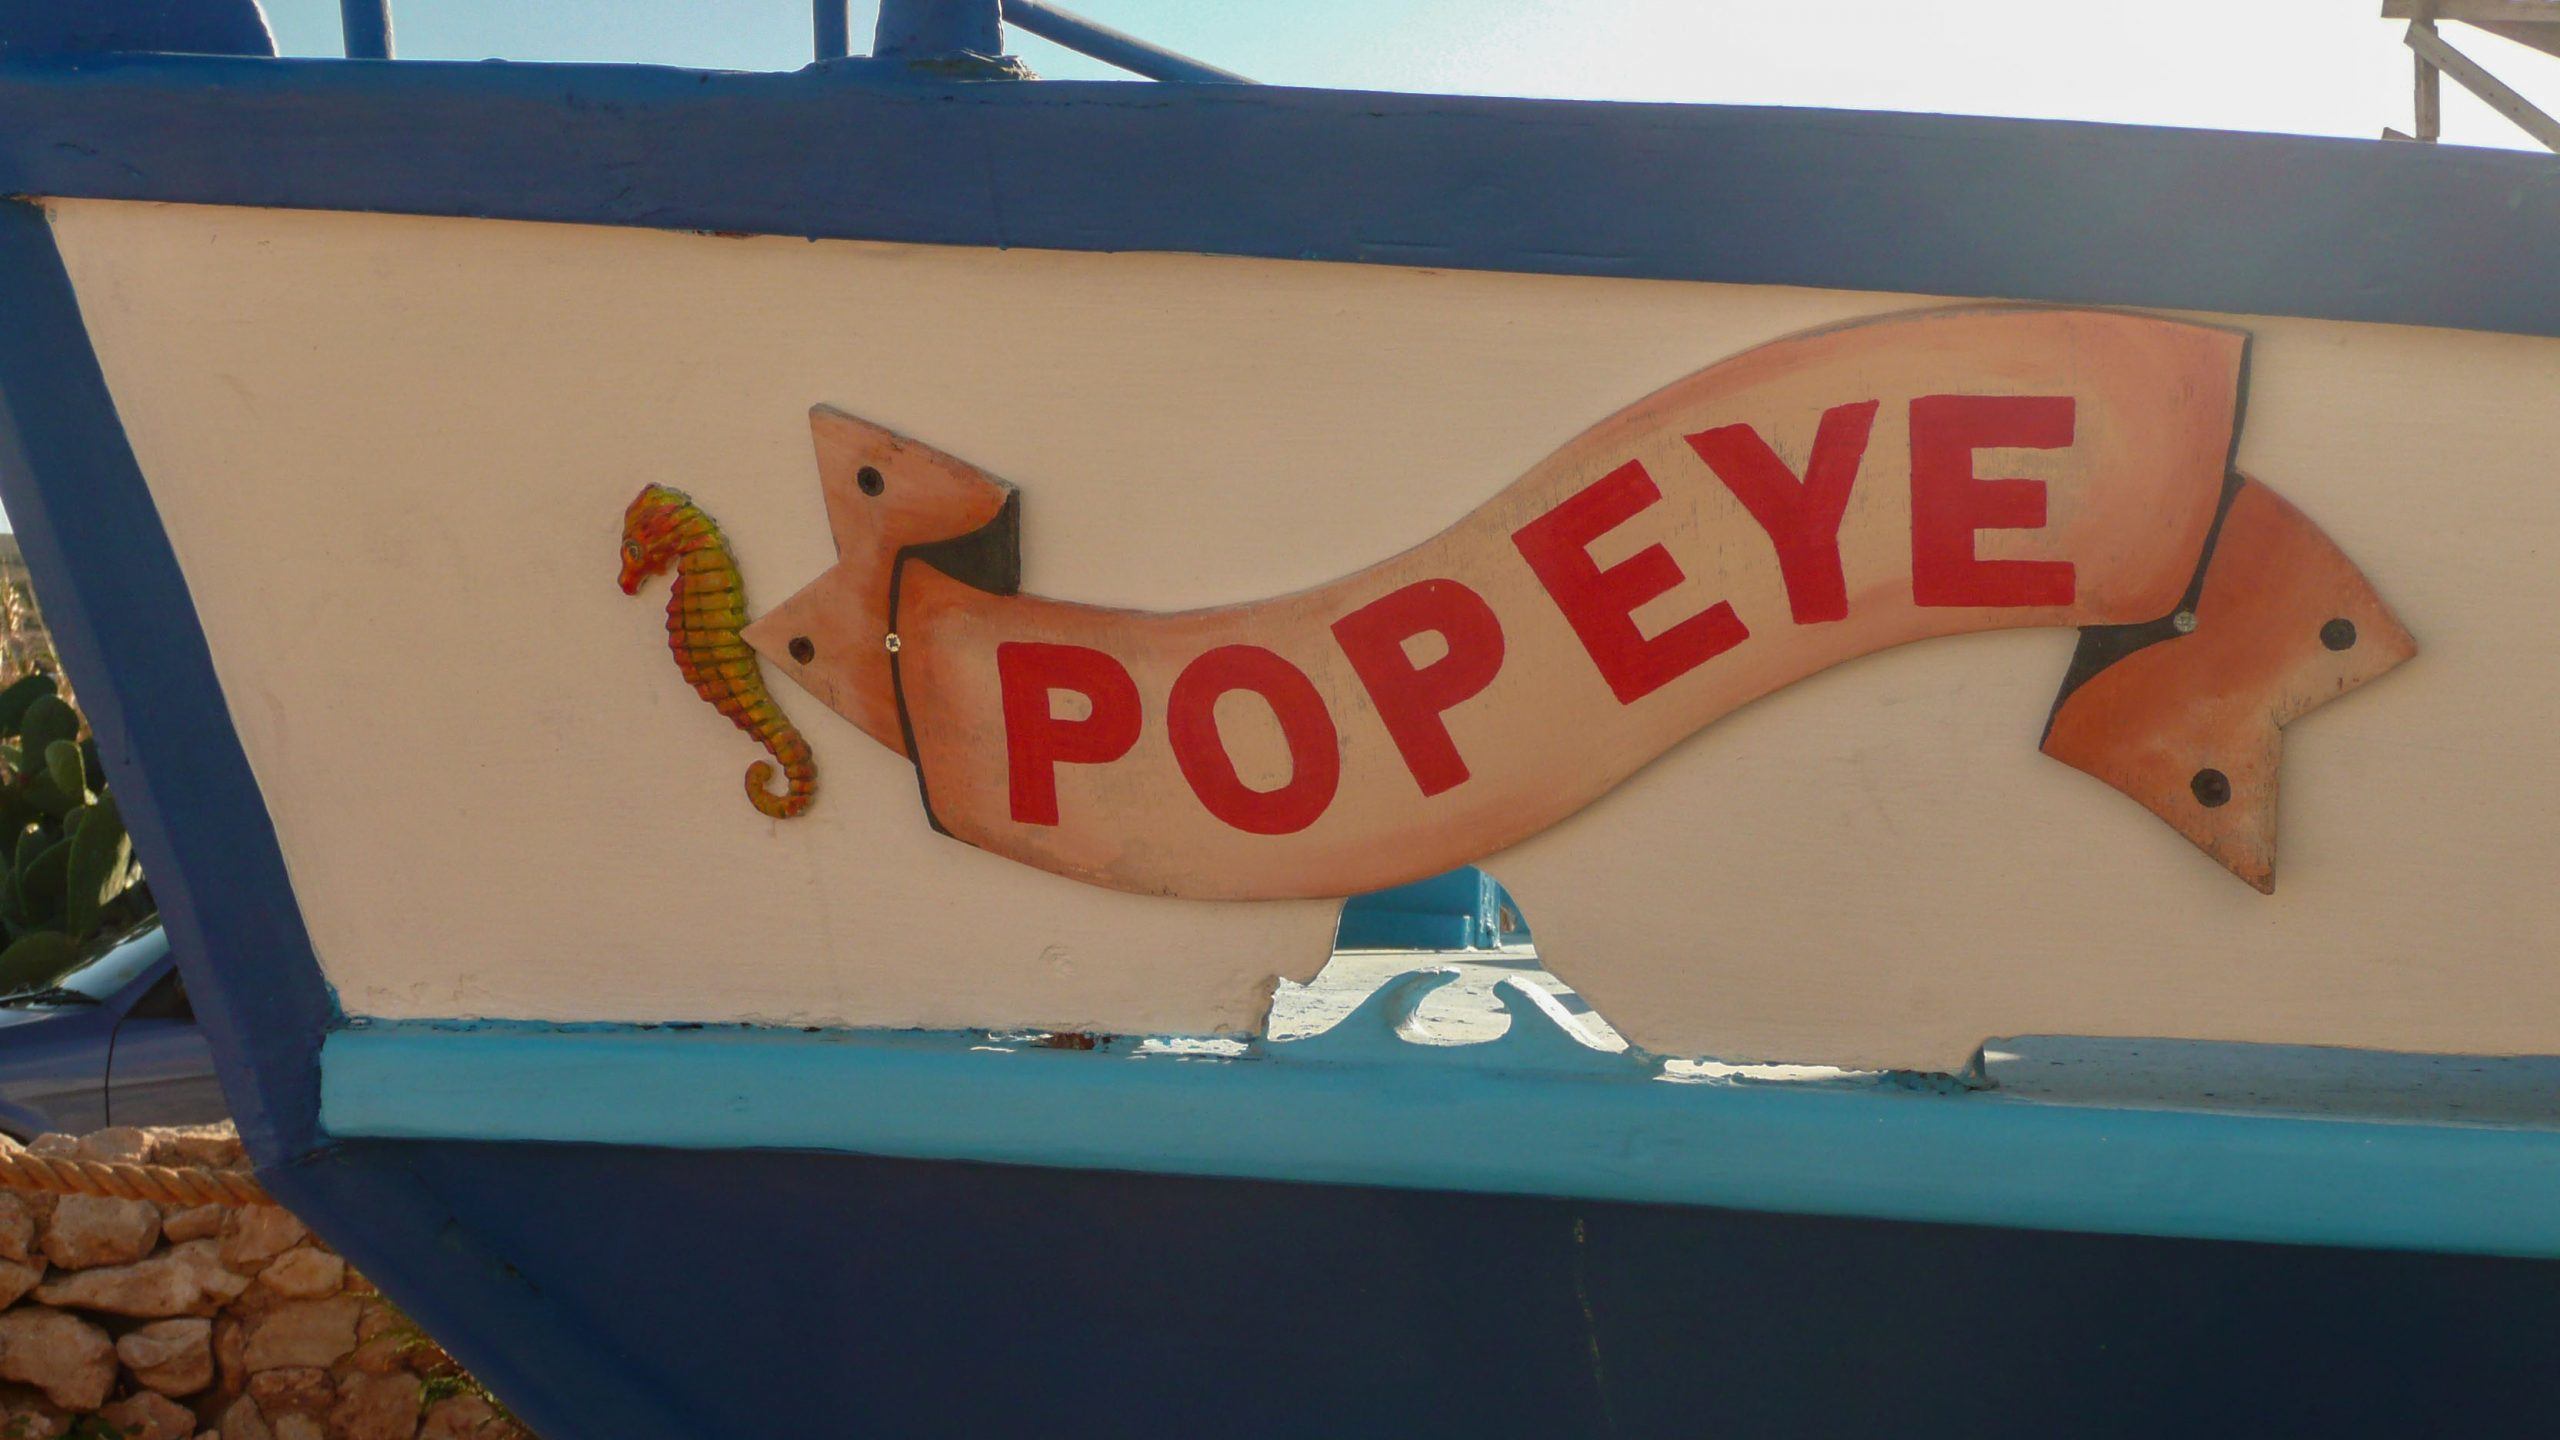 Popeye boat in Melliena Malta